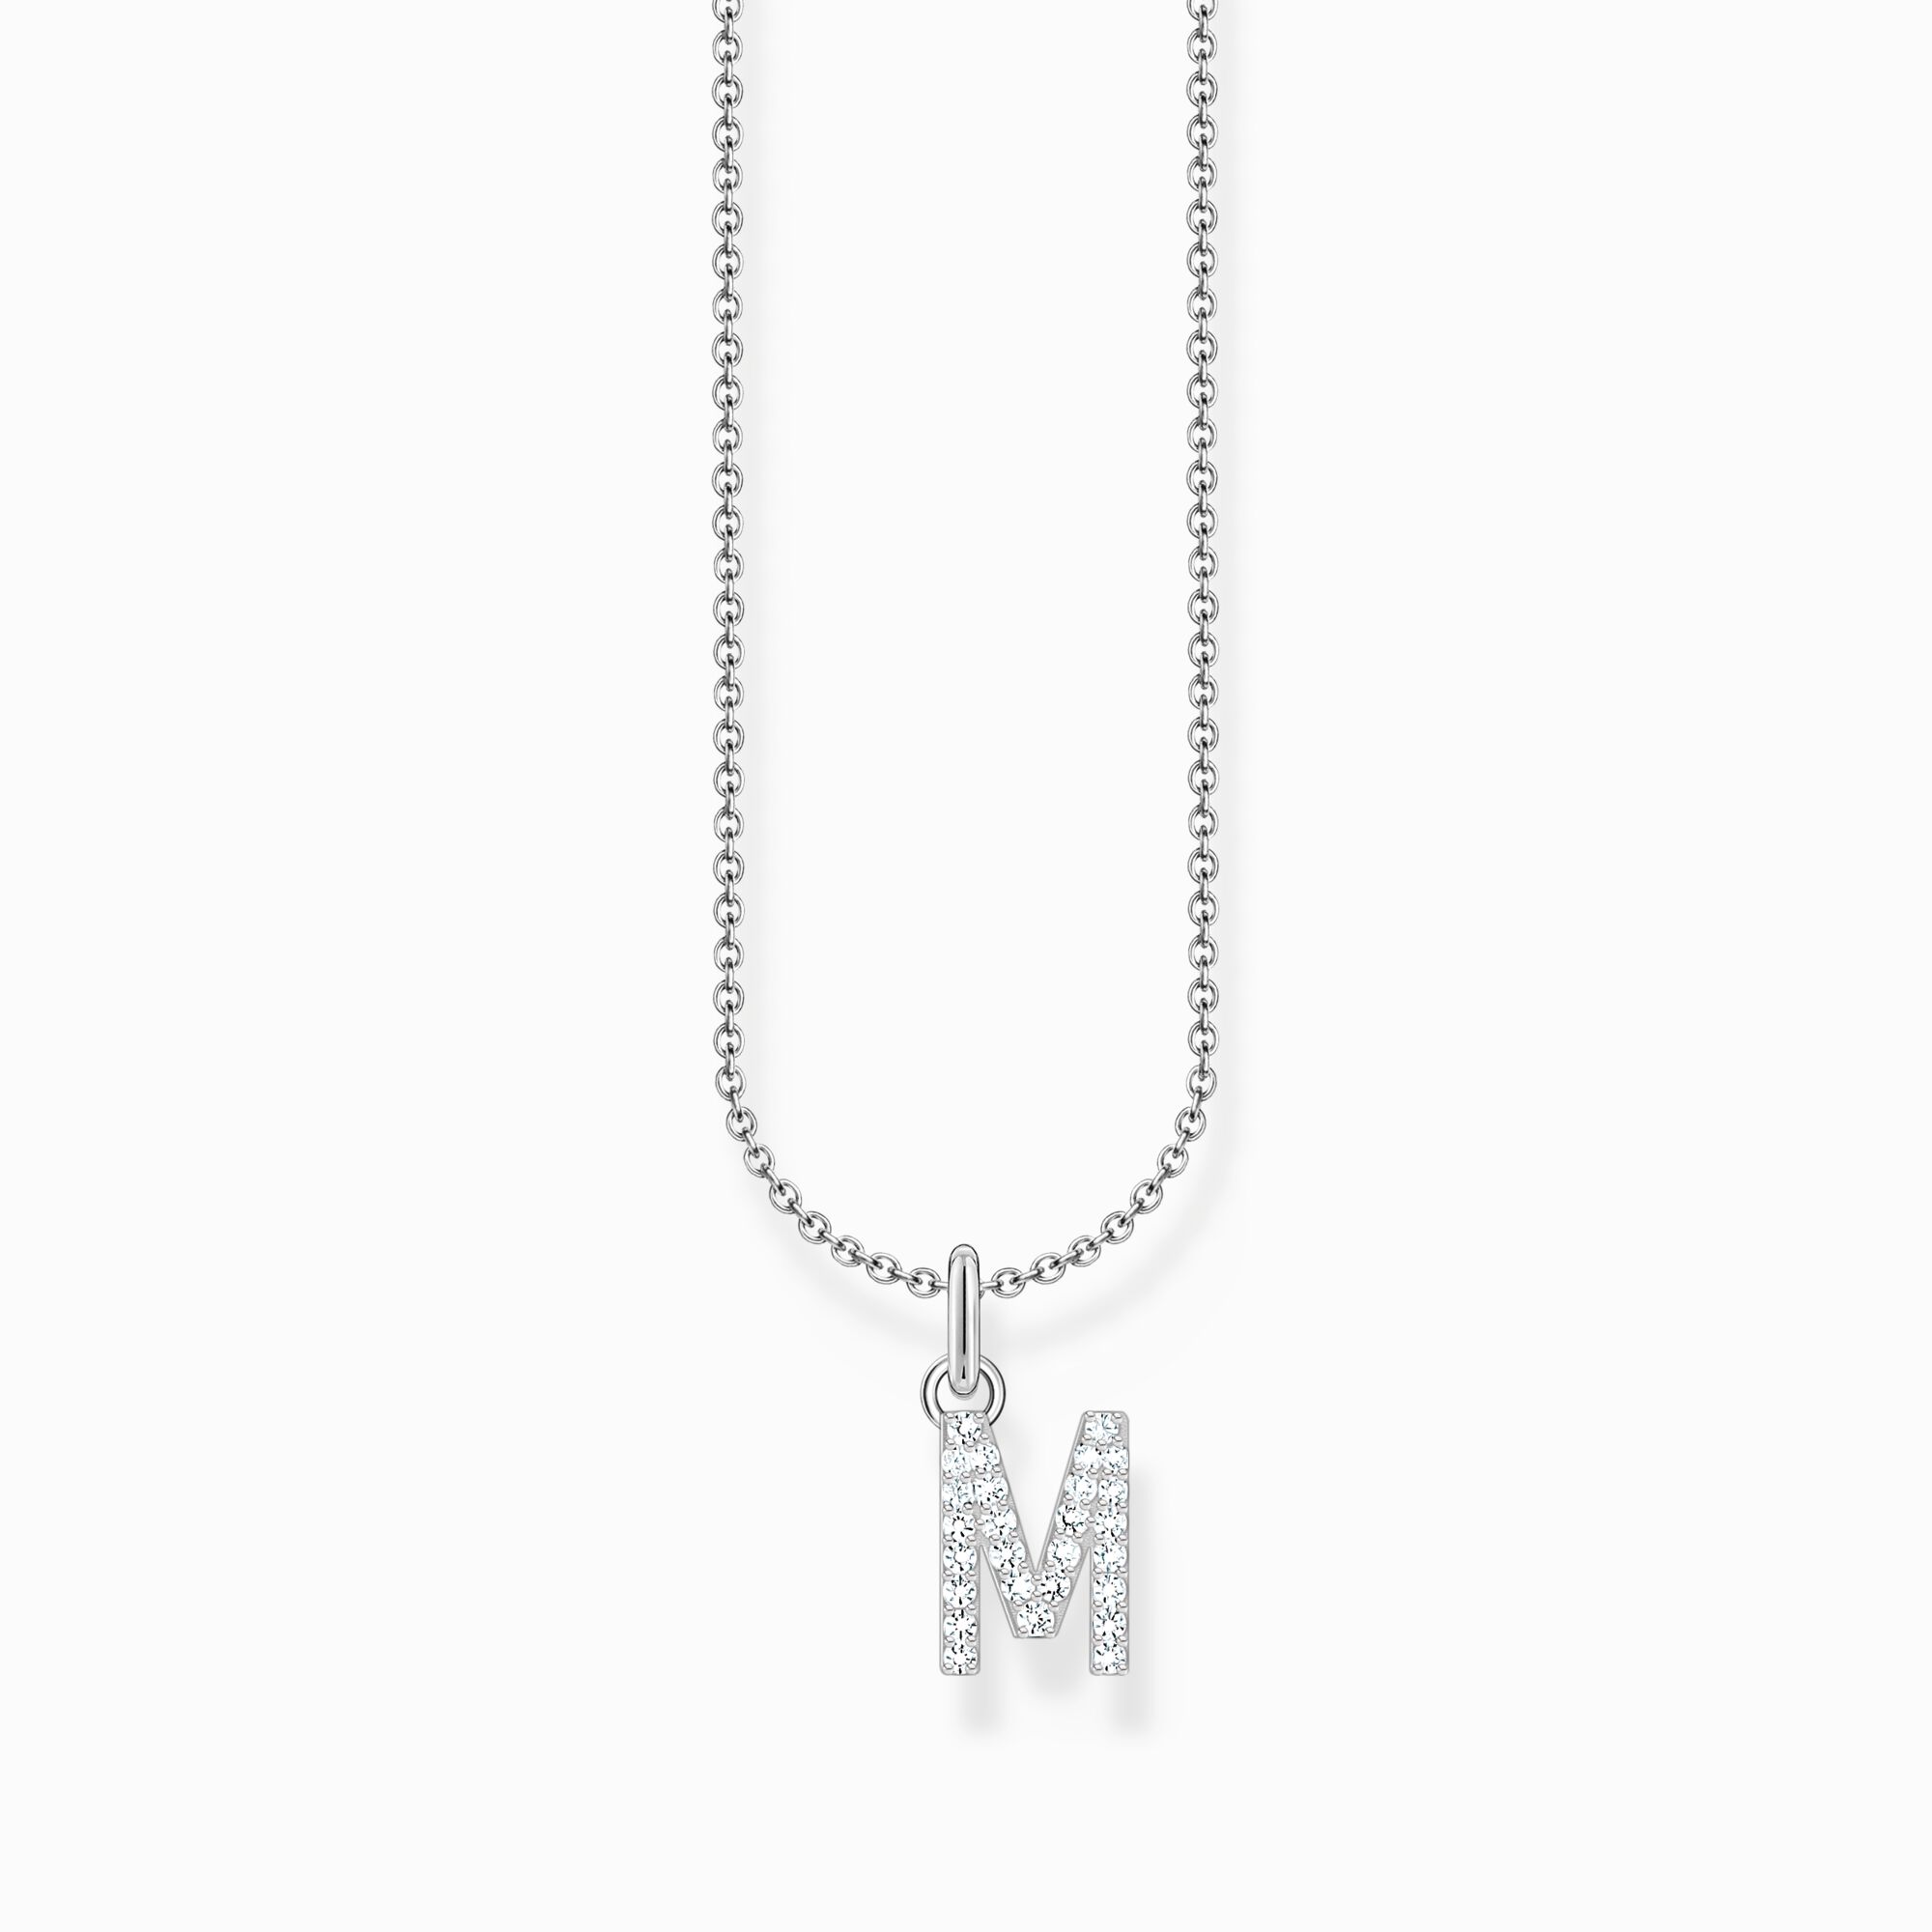 Halsband med bokstaven M, silver ur kollektionen Charming Collection i THOMAS SABO:s onlineshop